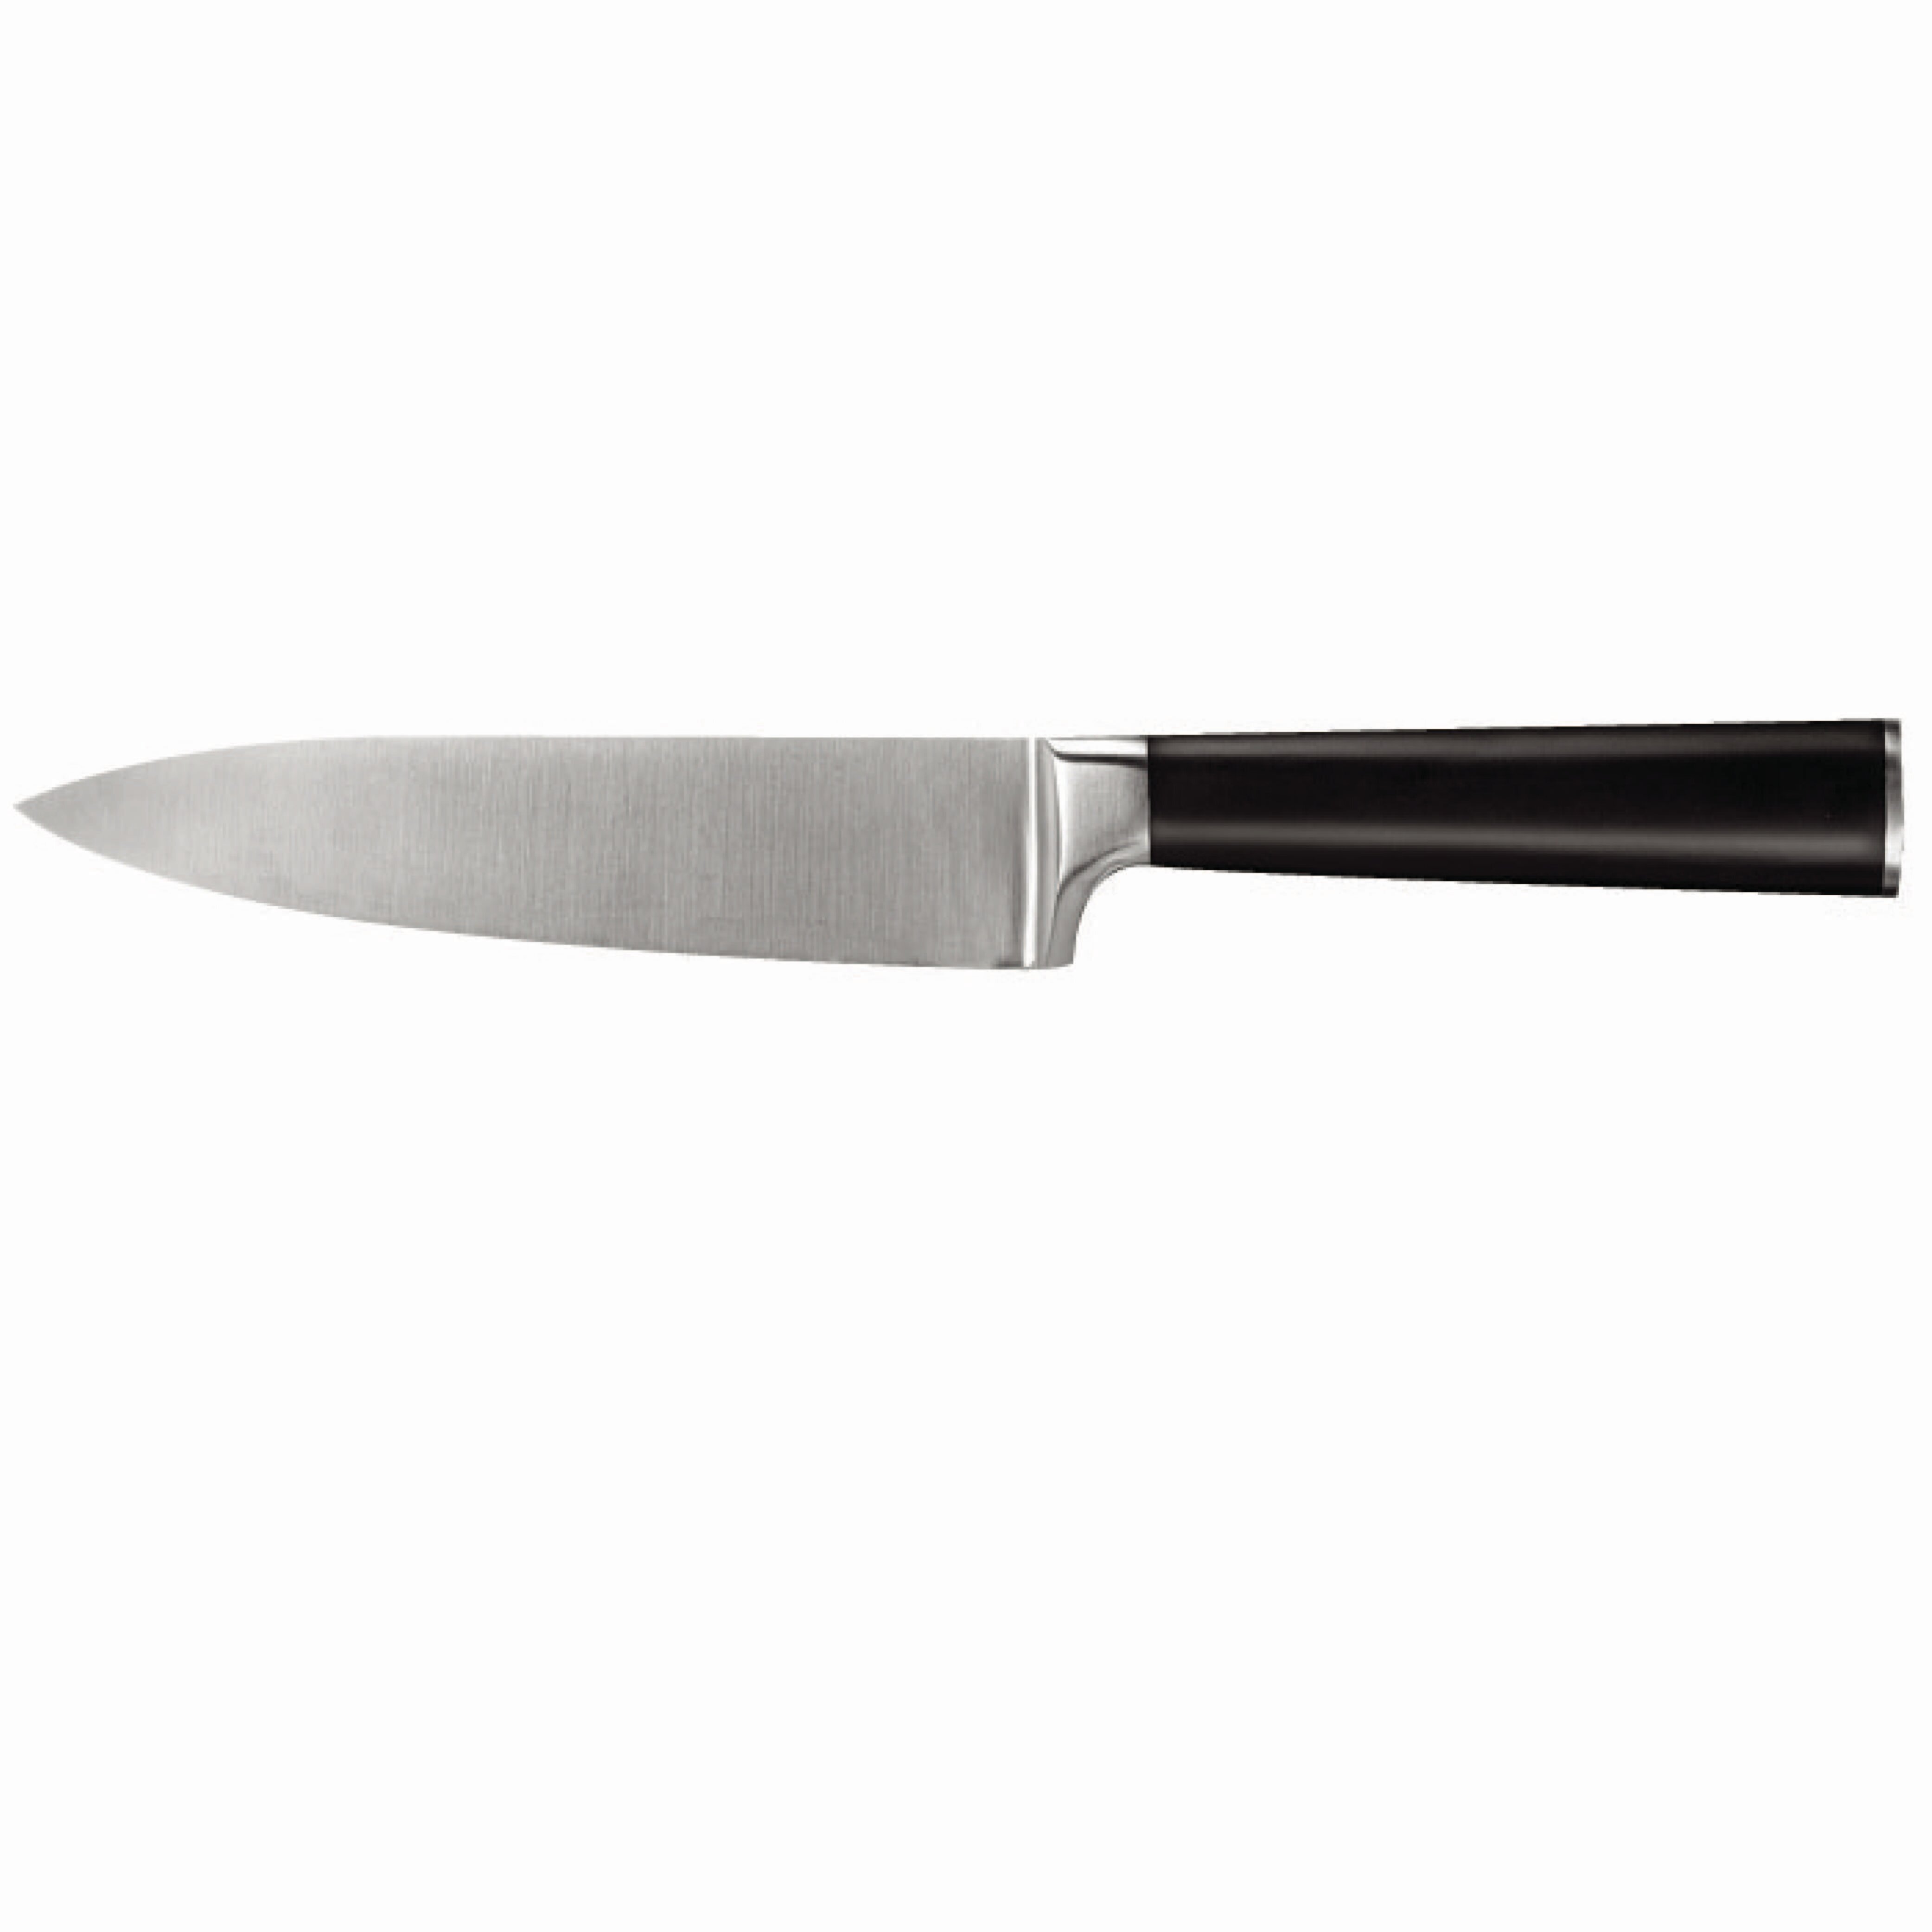 https://assets.wfcdn.com/im/65103500/compr-r85/1359/13595603/ginsu-chikara-series-6-hollow-edge-chefs-knife.jpg